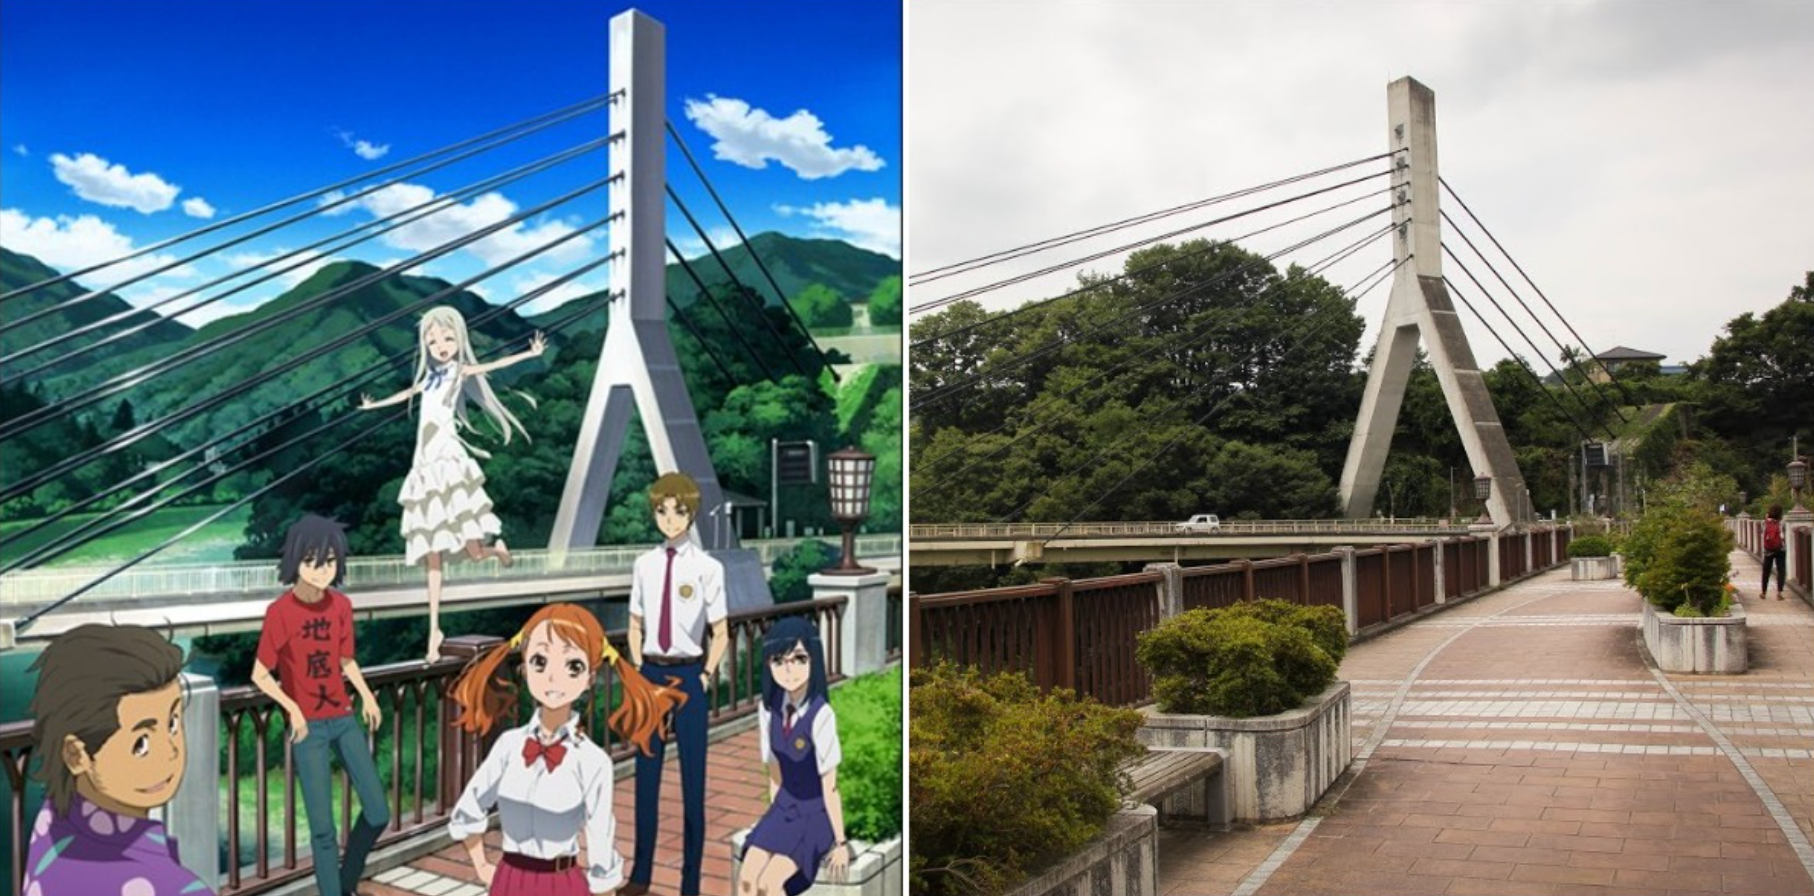 Chichibu Bridge In Anohana Anime With Main Characters And Real Life Bridge